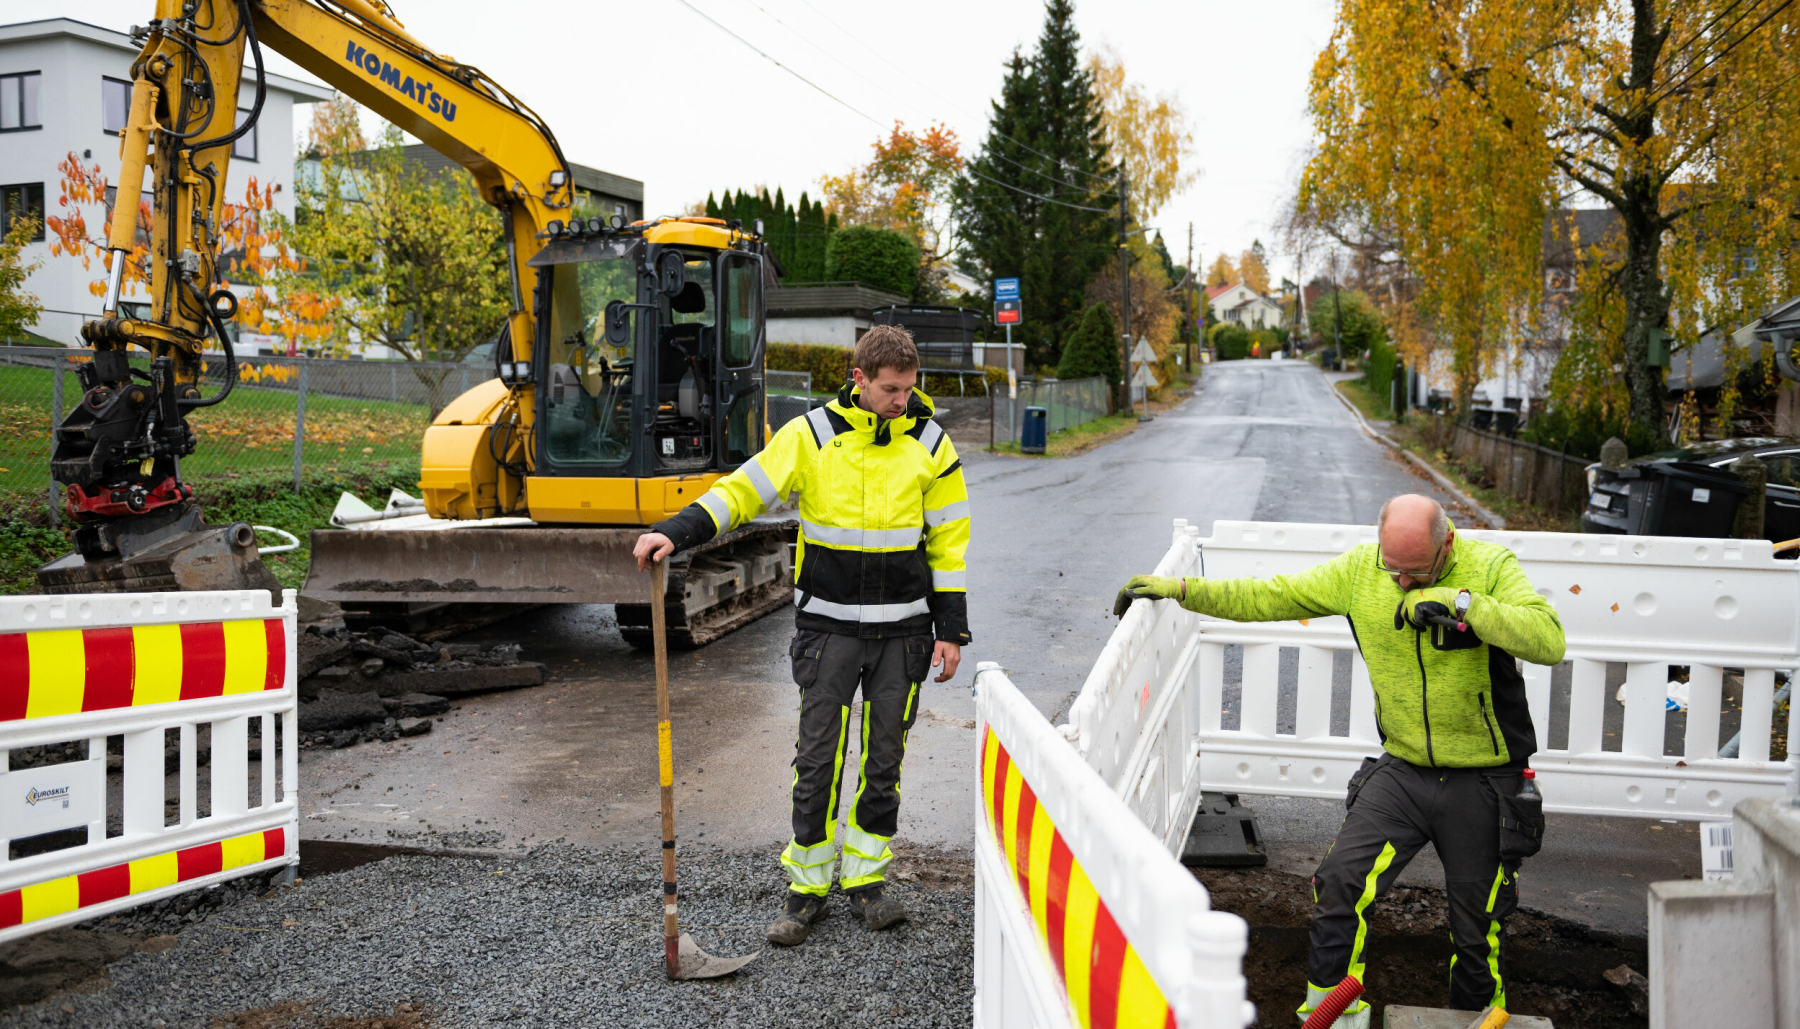 URBANT: André og Åge Svendsen gjør mye arbeid i urbane strøk. Da kommer det godt med å ha smidig utstyr - som fungerer.